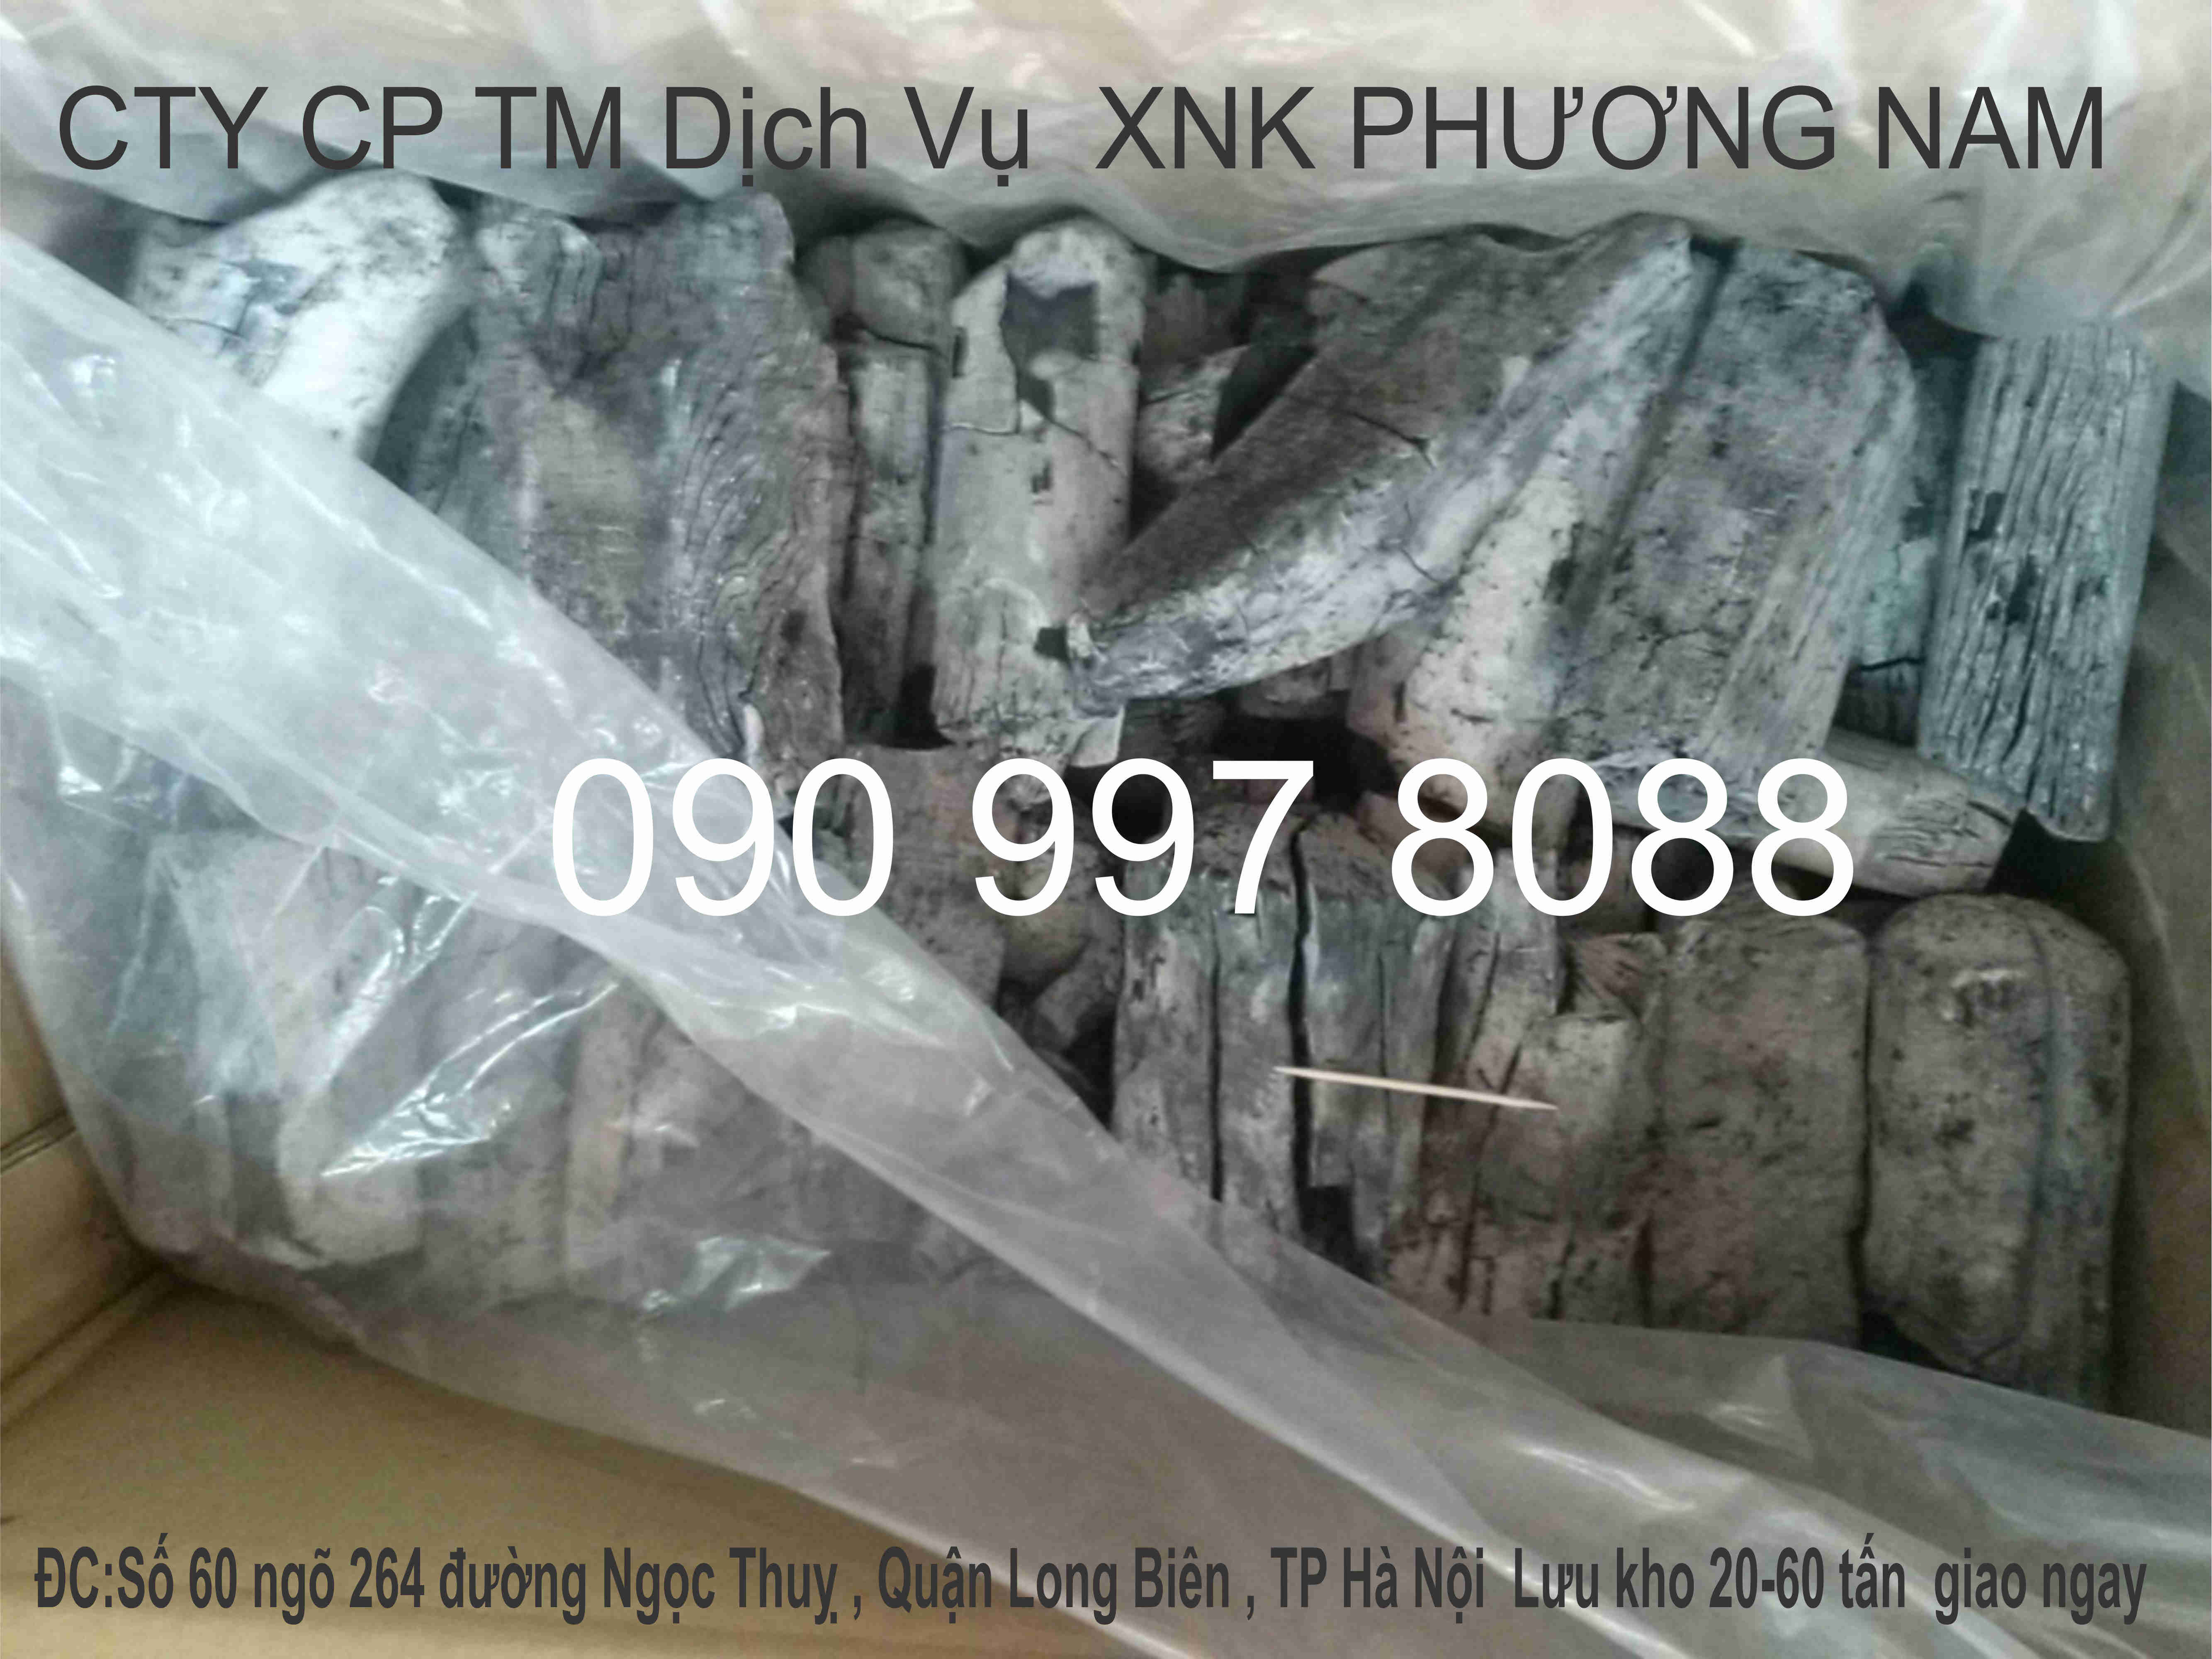 Sản xuất than trắng gỗ Vải 1.000oC, Xuất xứ Việt Nam